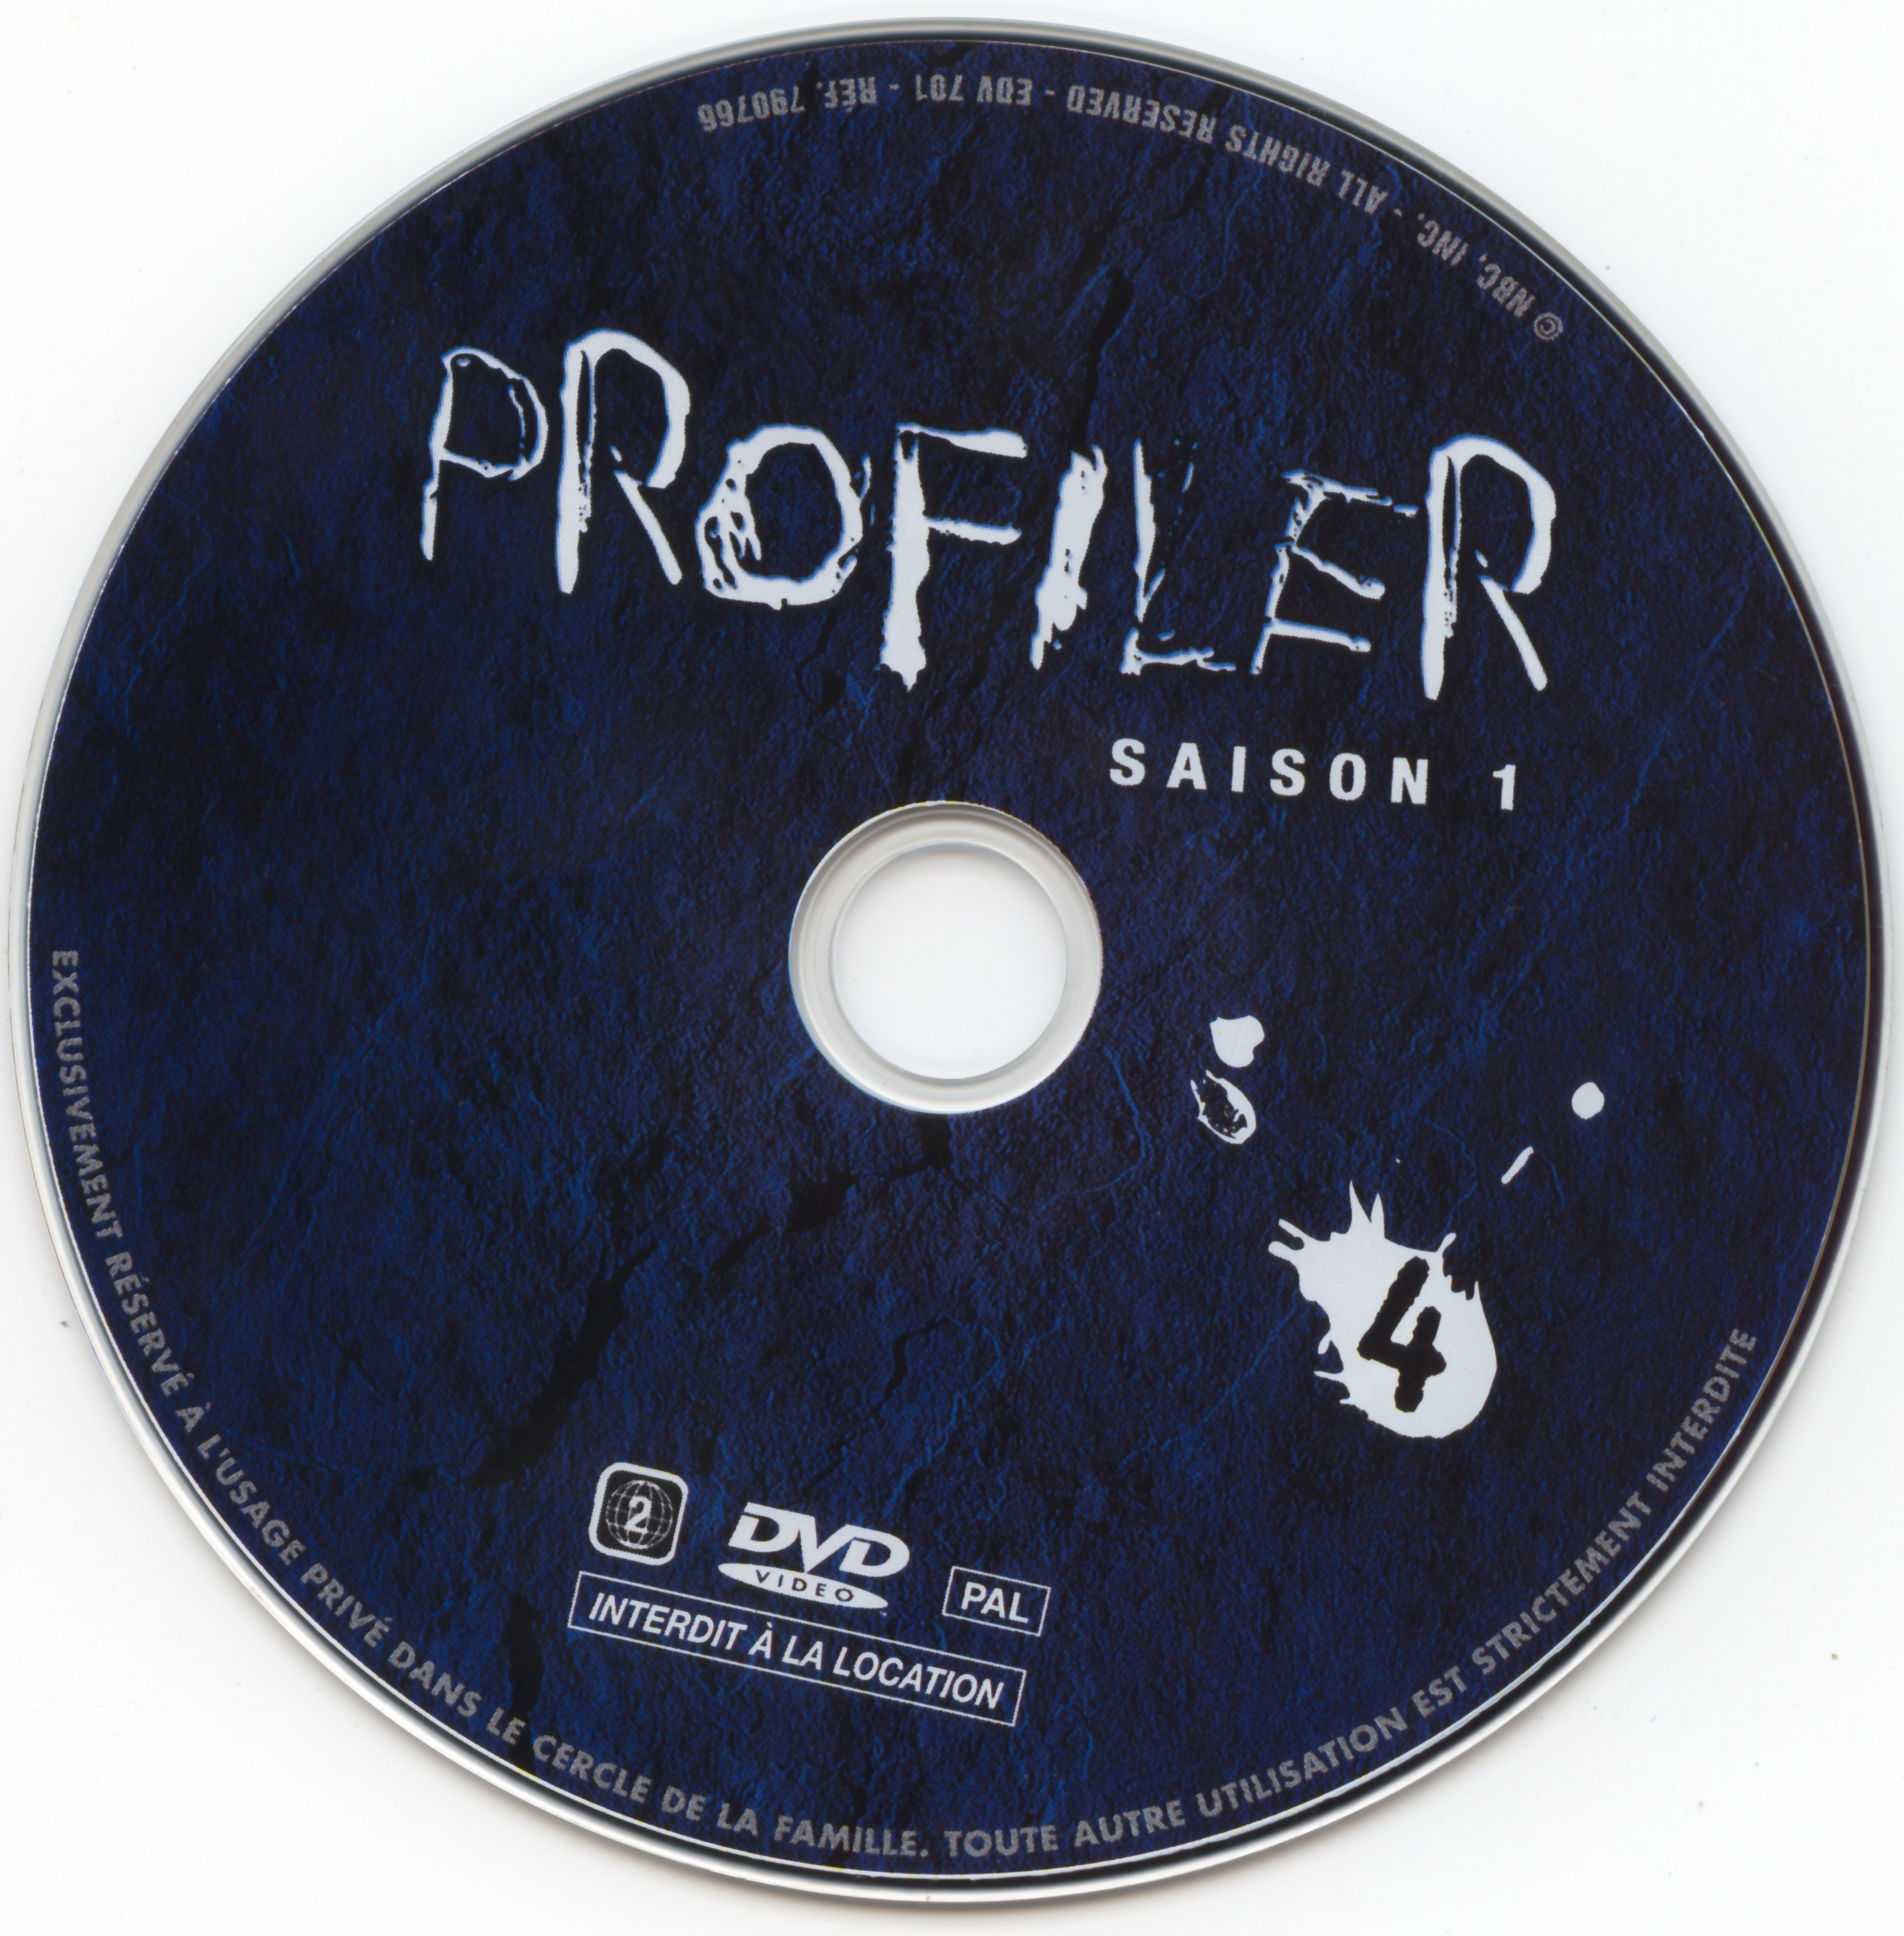 Profiler saison 1 DVD 4